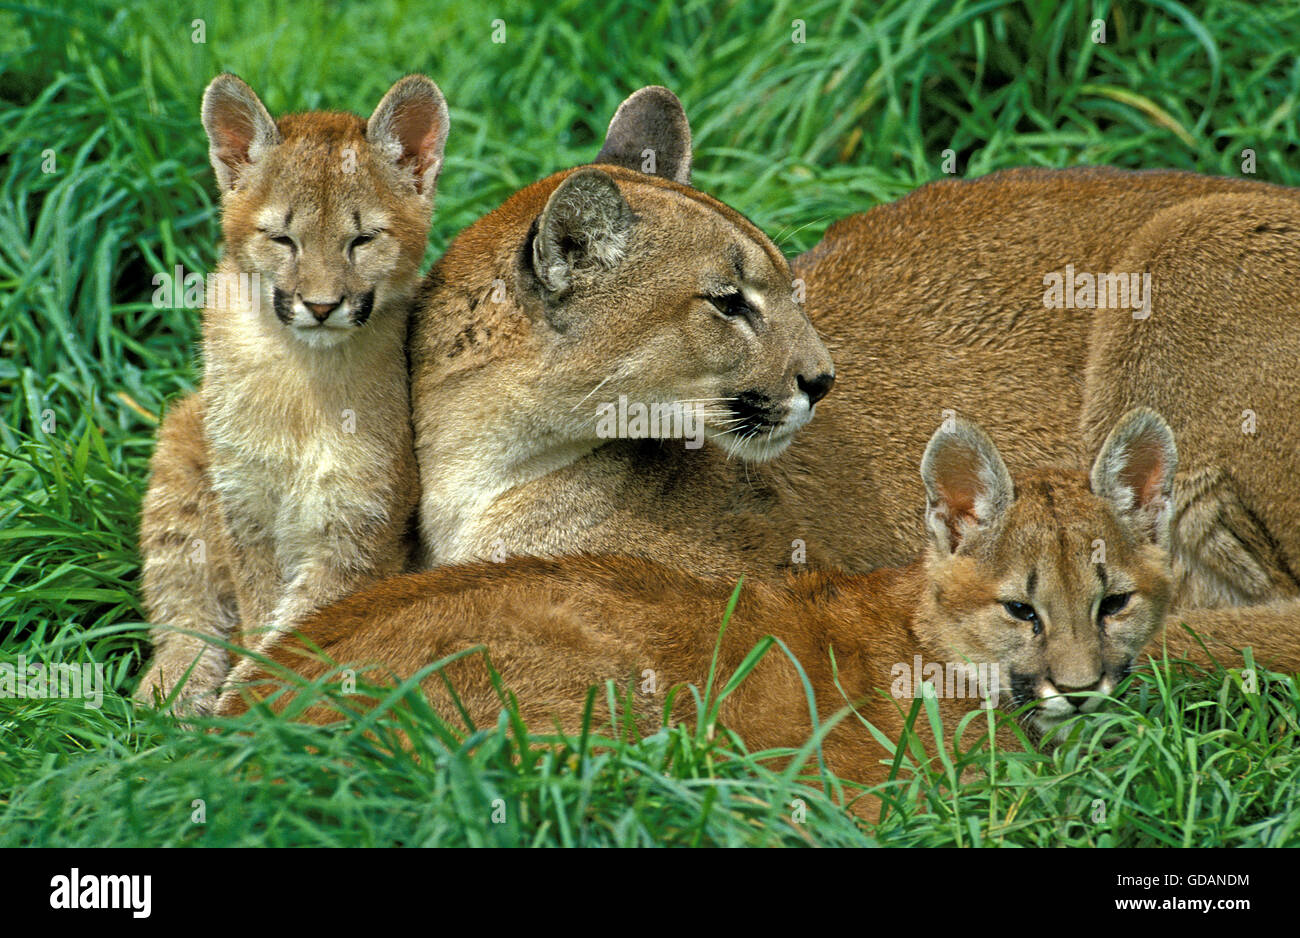 Puma, Puma Concolor, Weibchen mit Jungtier Verlegung auf Rasen  Stockfotografie - Alamy